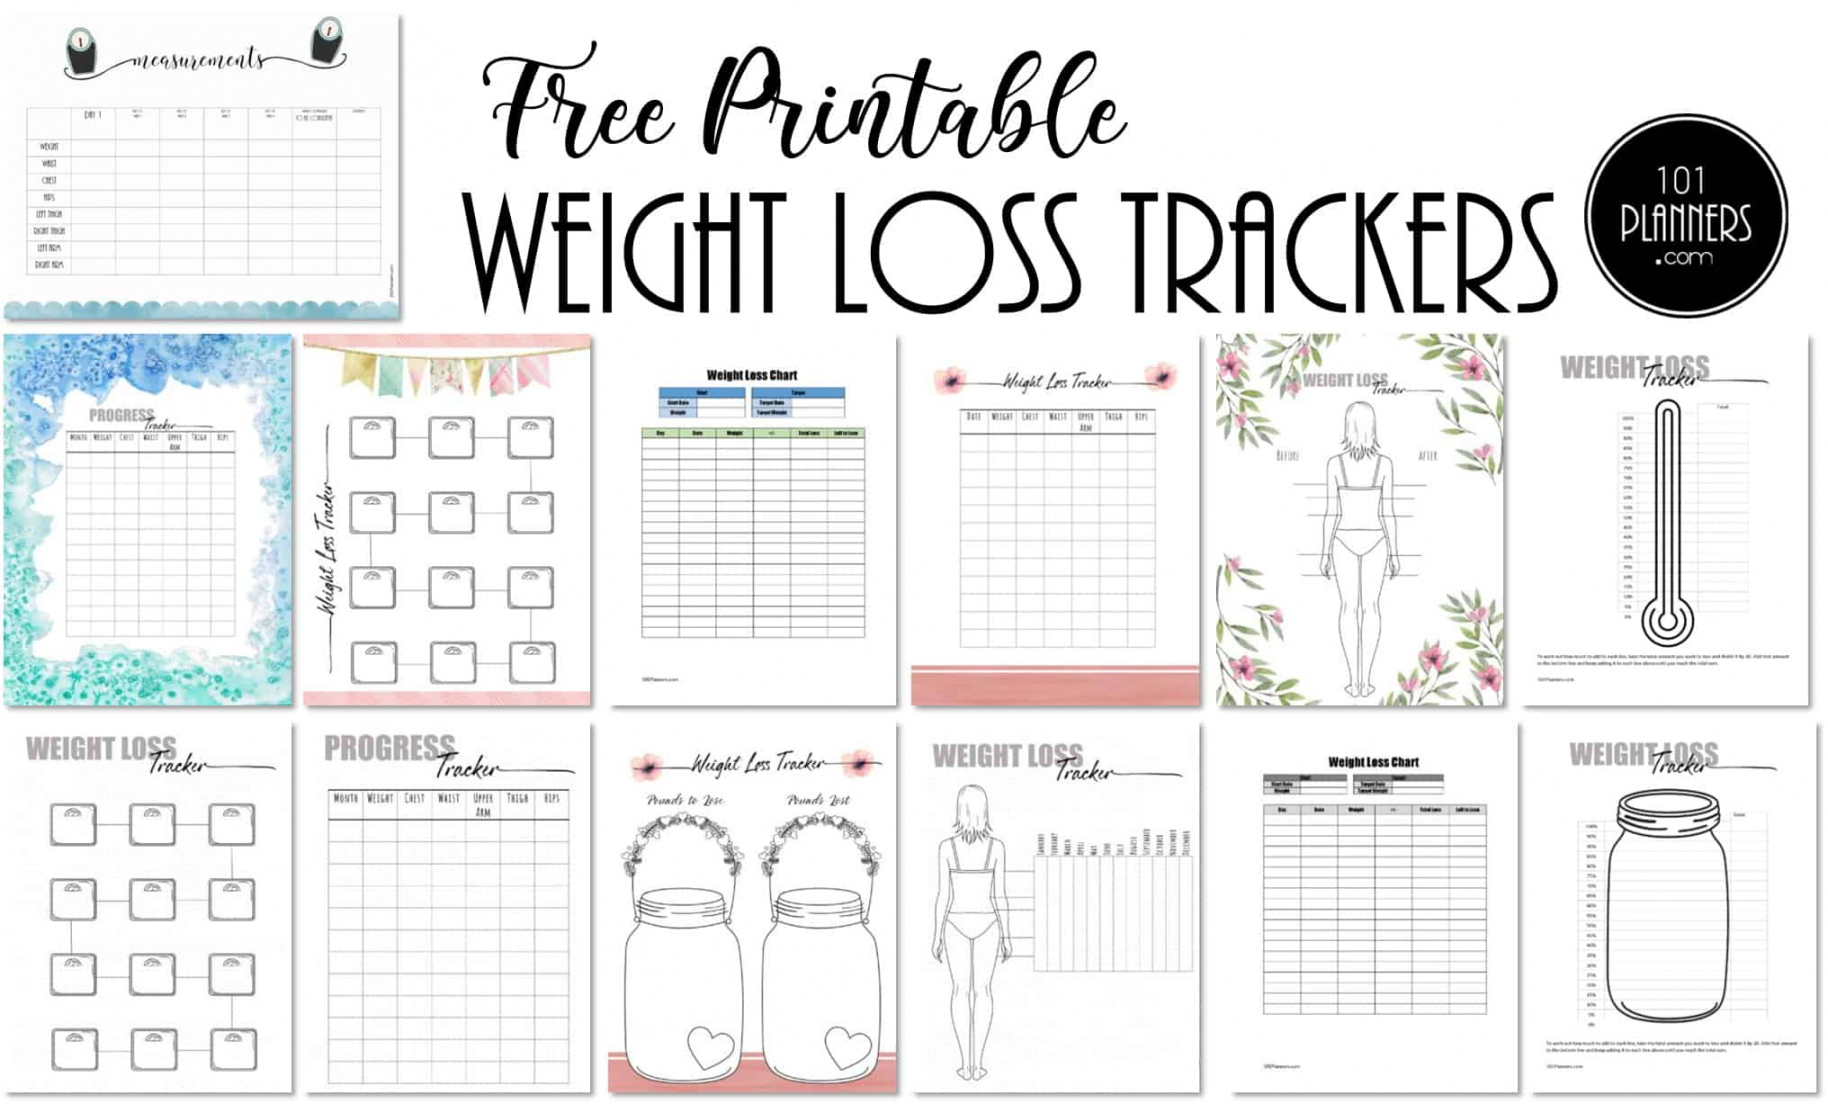 Free Printable Weight Loss Tracker - Printable - FREE Weight Loss Tracker Printable  Customize before you Print